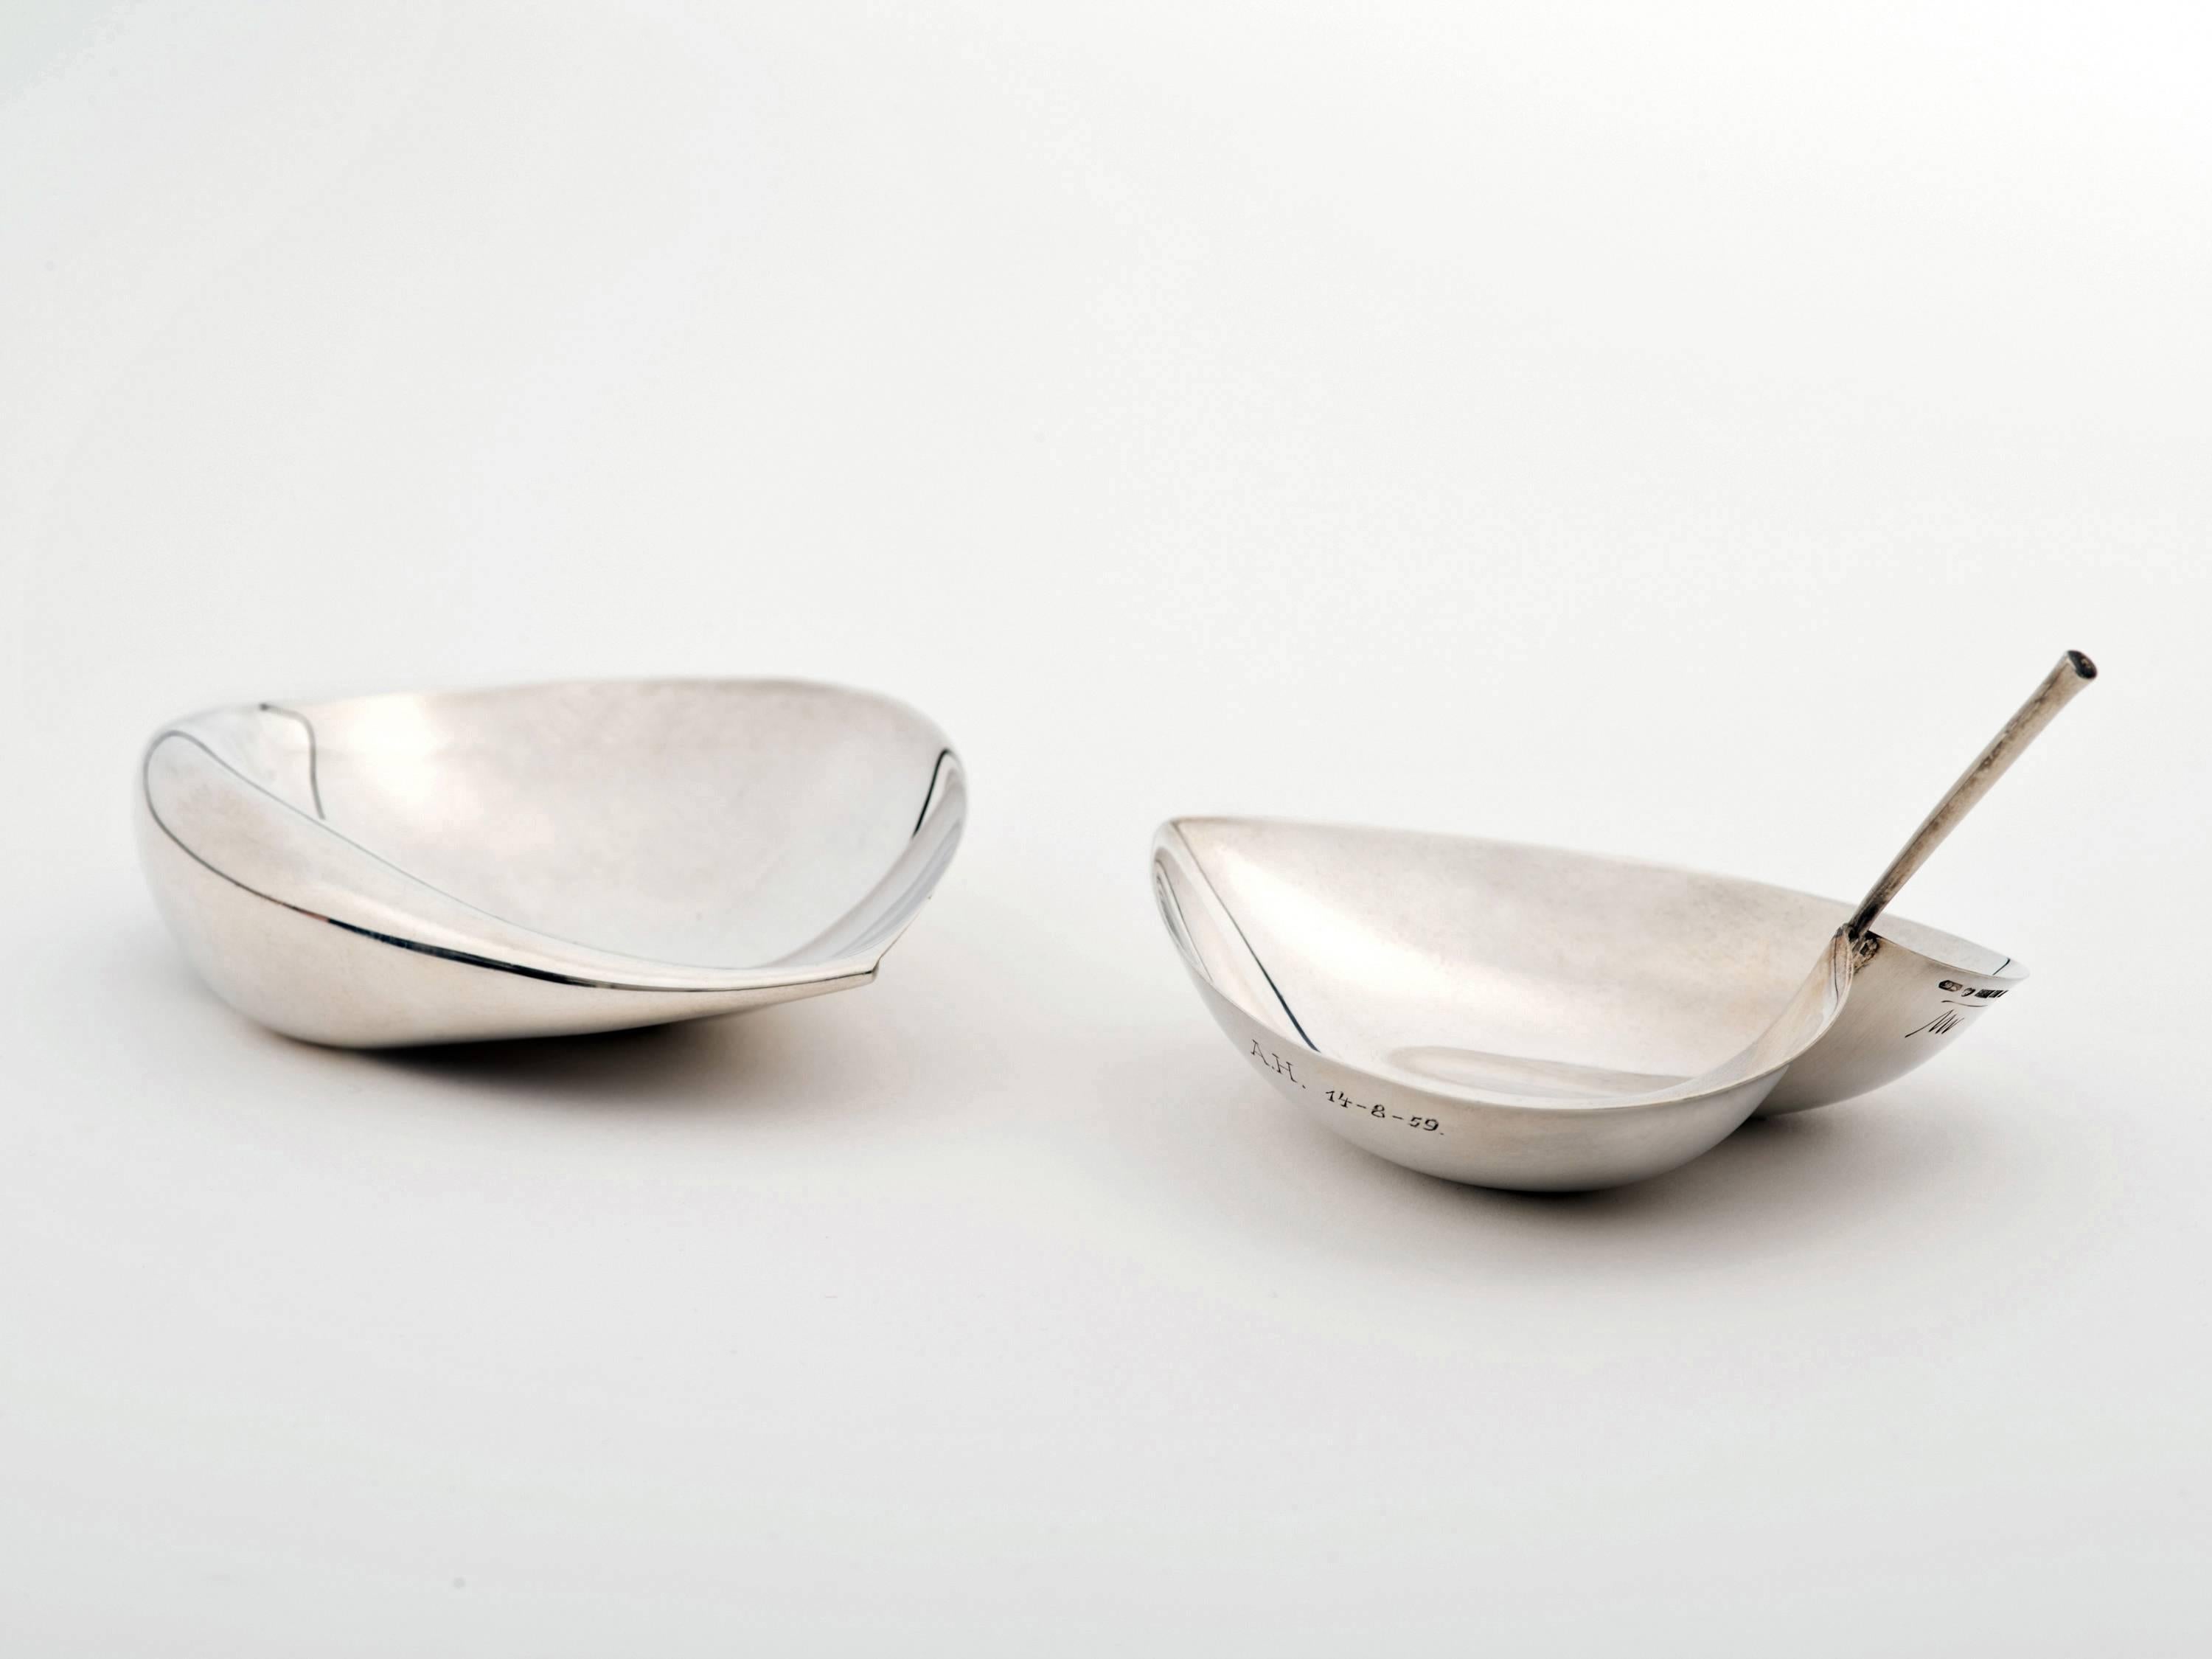 Une élégante paire de plats en forme de feuille, modèles TW-5 (g.) et TW-4 (d.), conçus par Tapio Wirkkala pour Kultakeskus Oy. Les deux pièces sont en bon état, avec tous les poinçons requis et la signature 